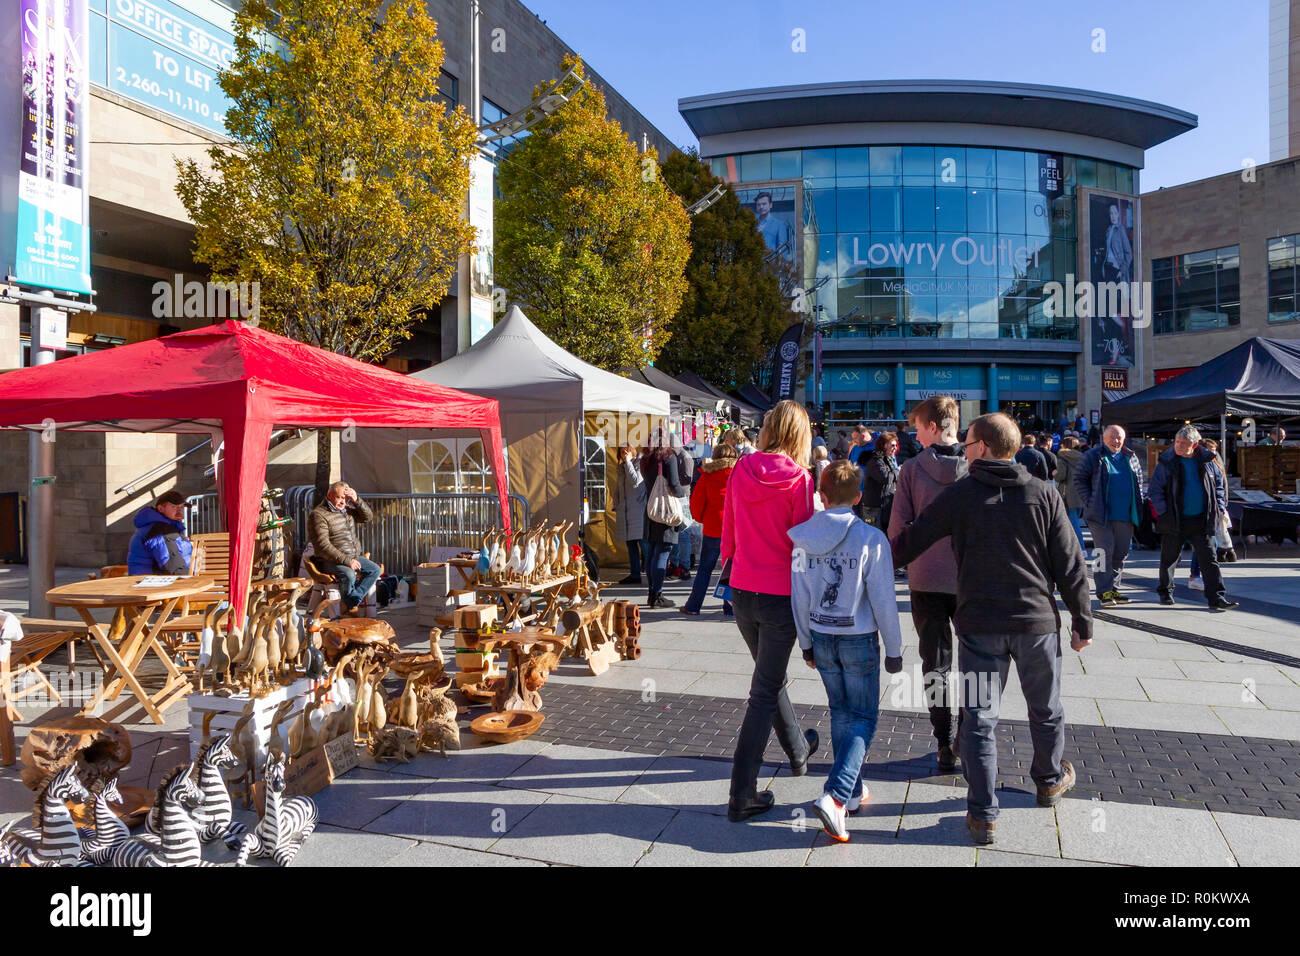 Die Macher Markt-, Handwerks- und Lebensmittelmarkt im Lowry Outlet Shopping Center, Mediacityuk, Salford Quays Stockfoto